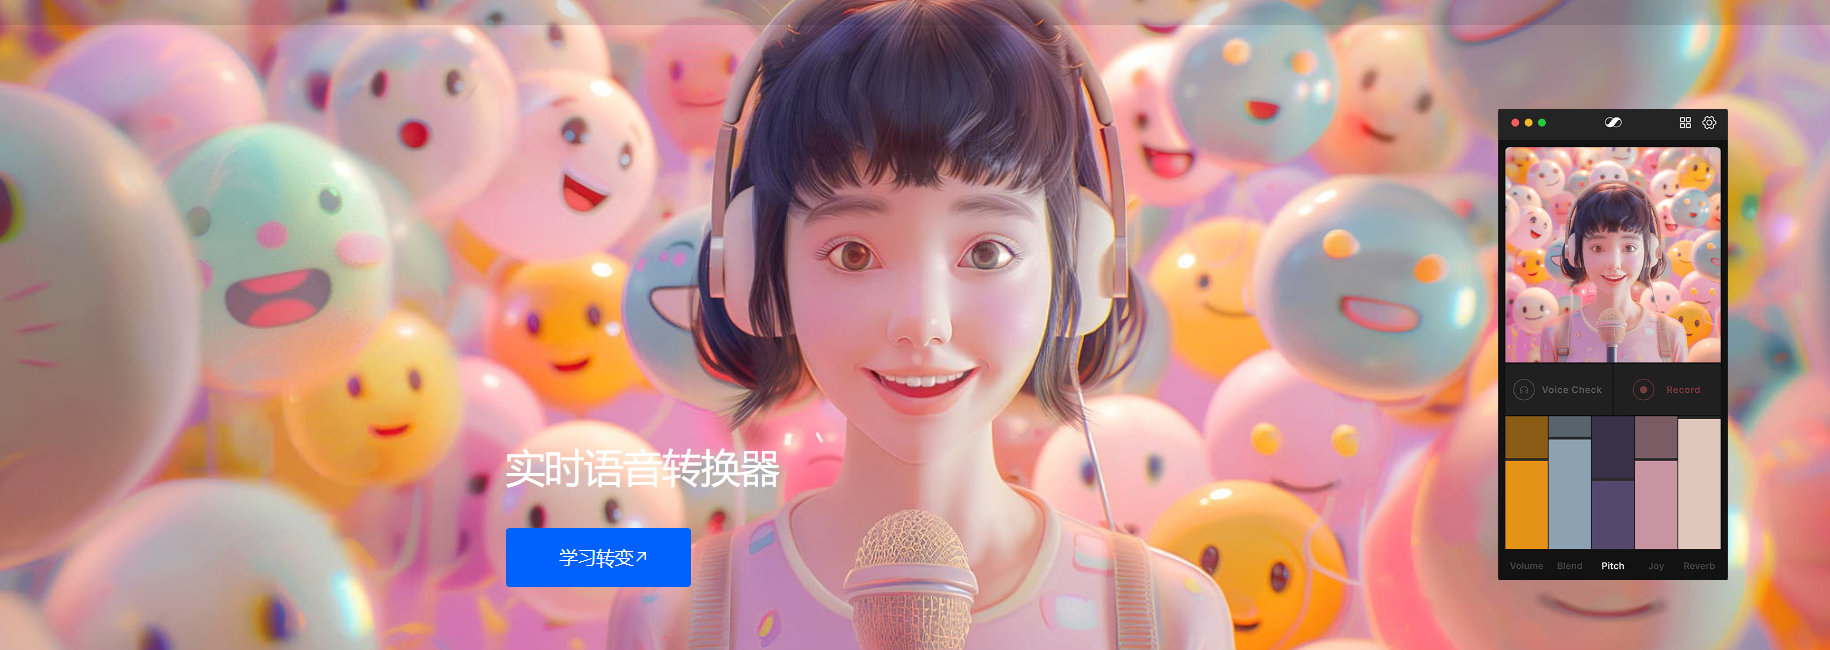 韩国推出的免费AI实时变声器软件 多角色切换 低延迟 高质量-青争开放社区